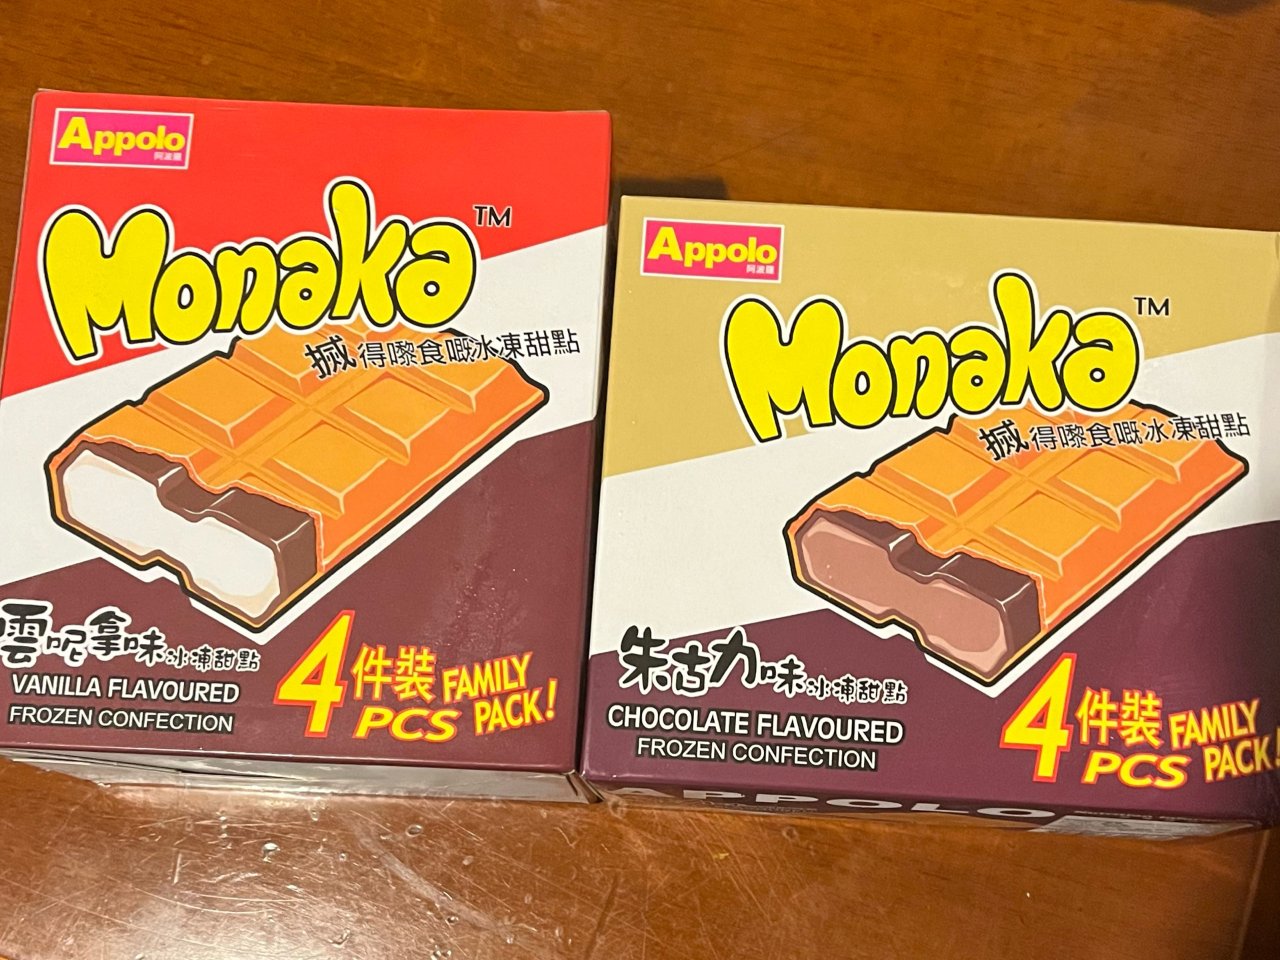 阿波罗 Monaka 巧克力味...